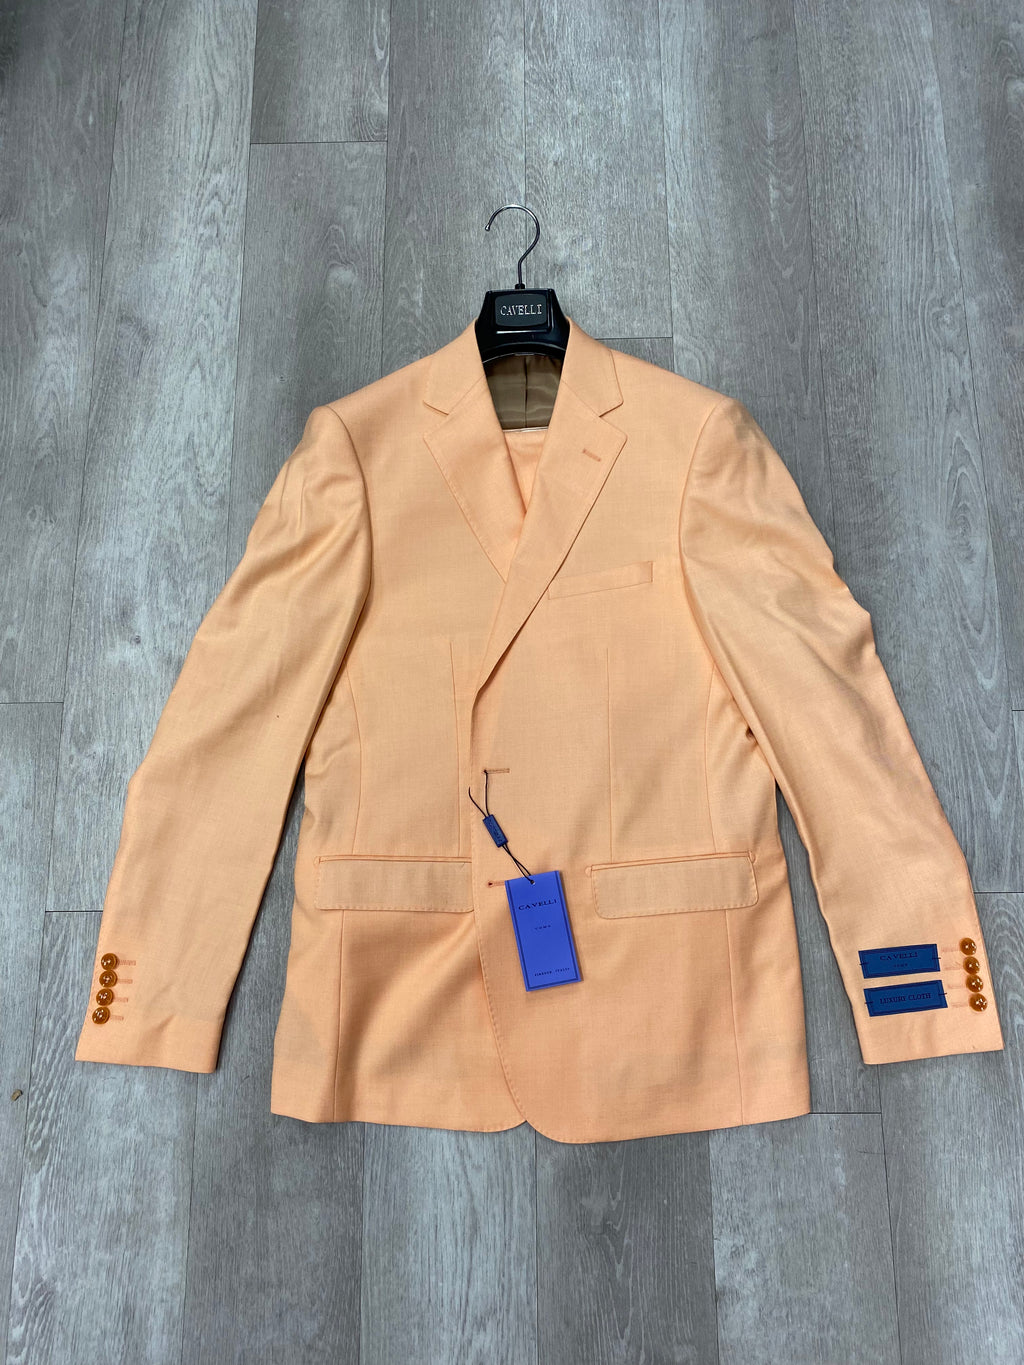 Cavelli Uomo Porto Slim Fit Suit 1986/11 Light Orange